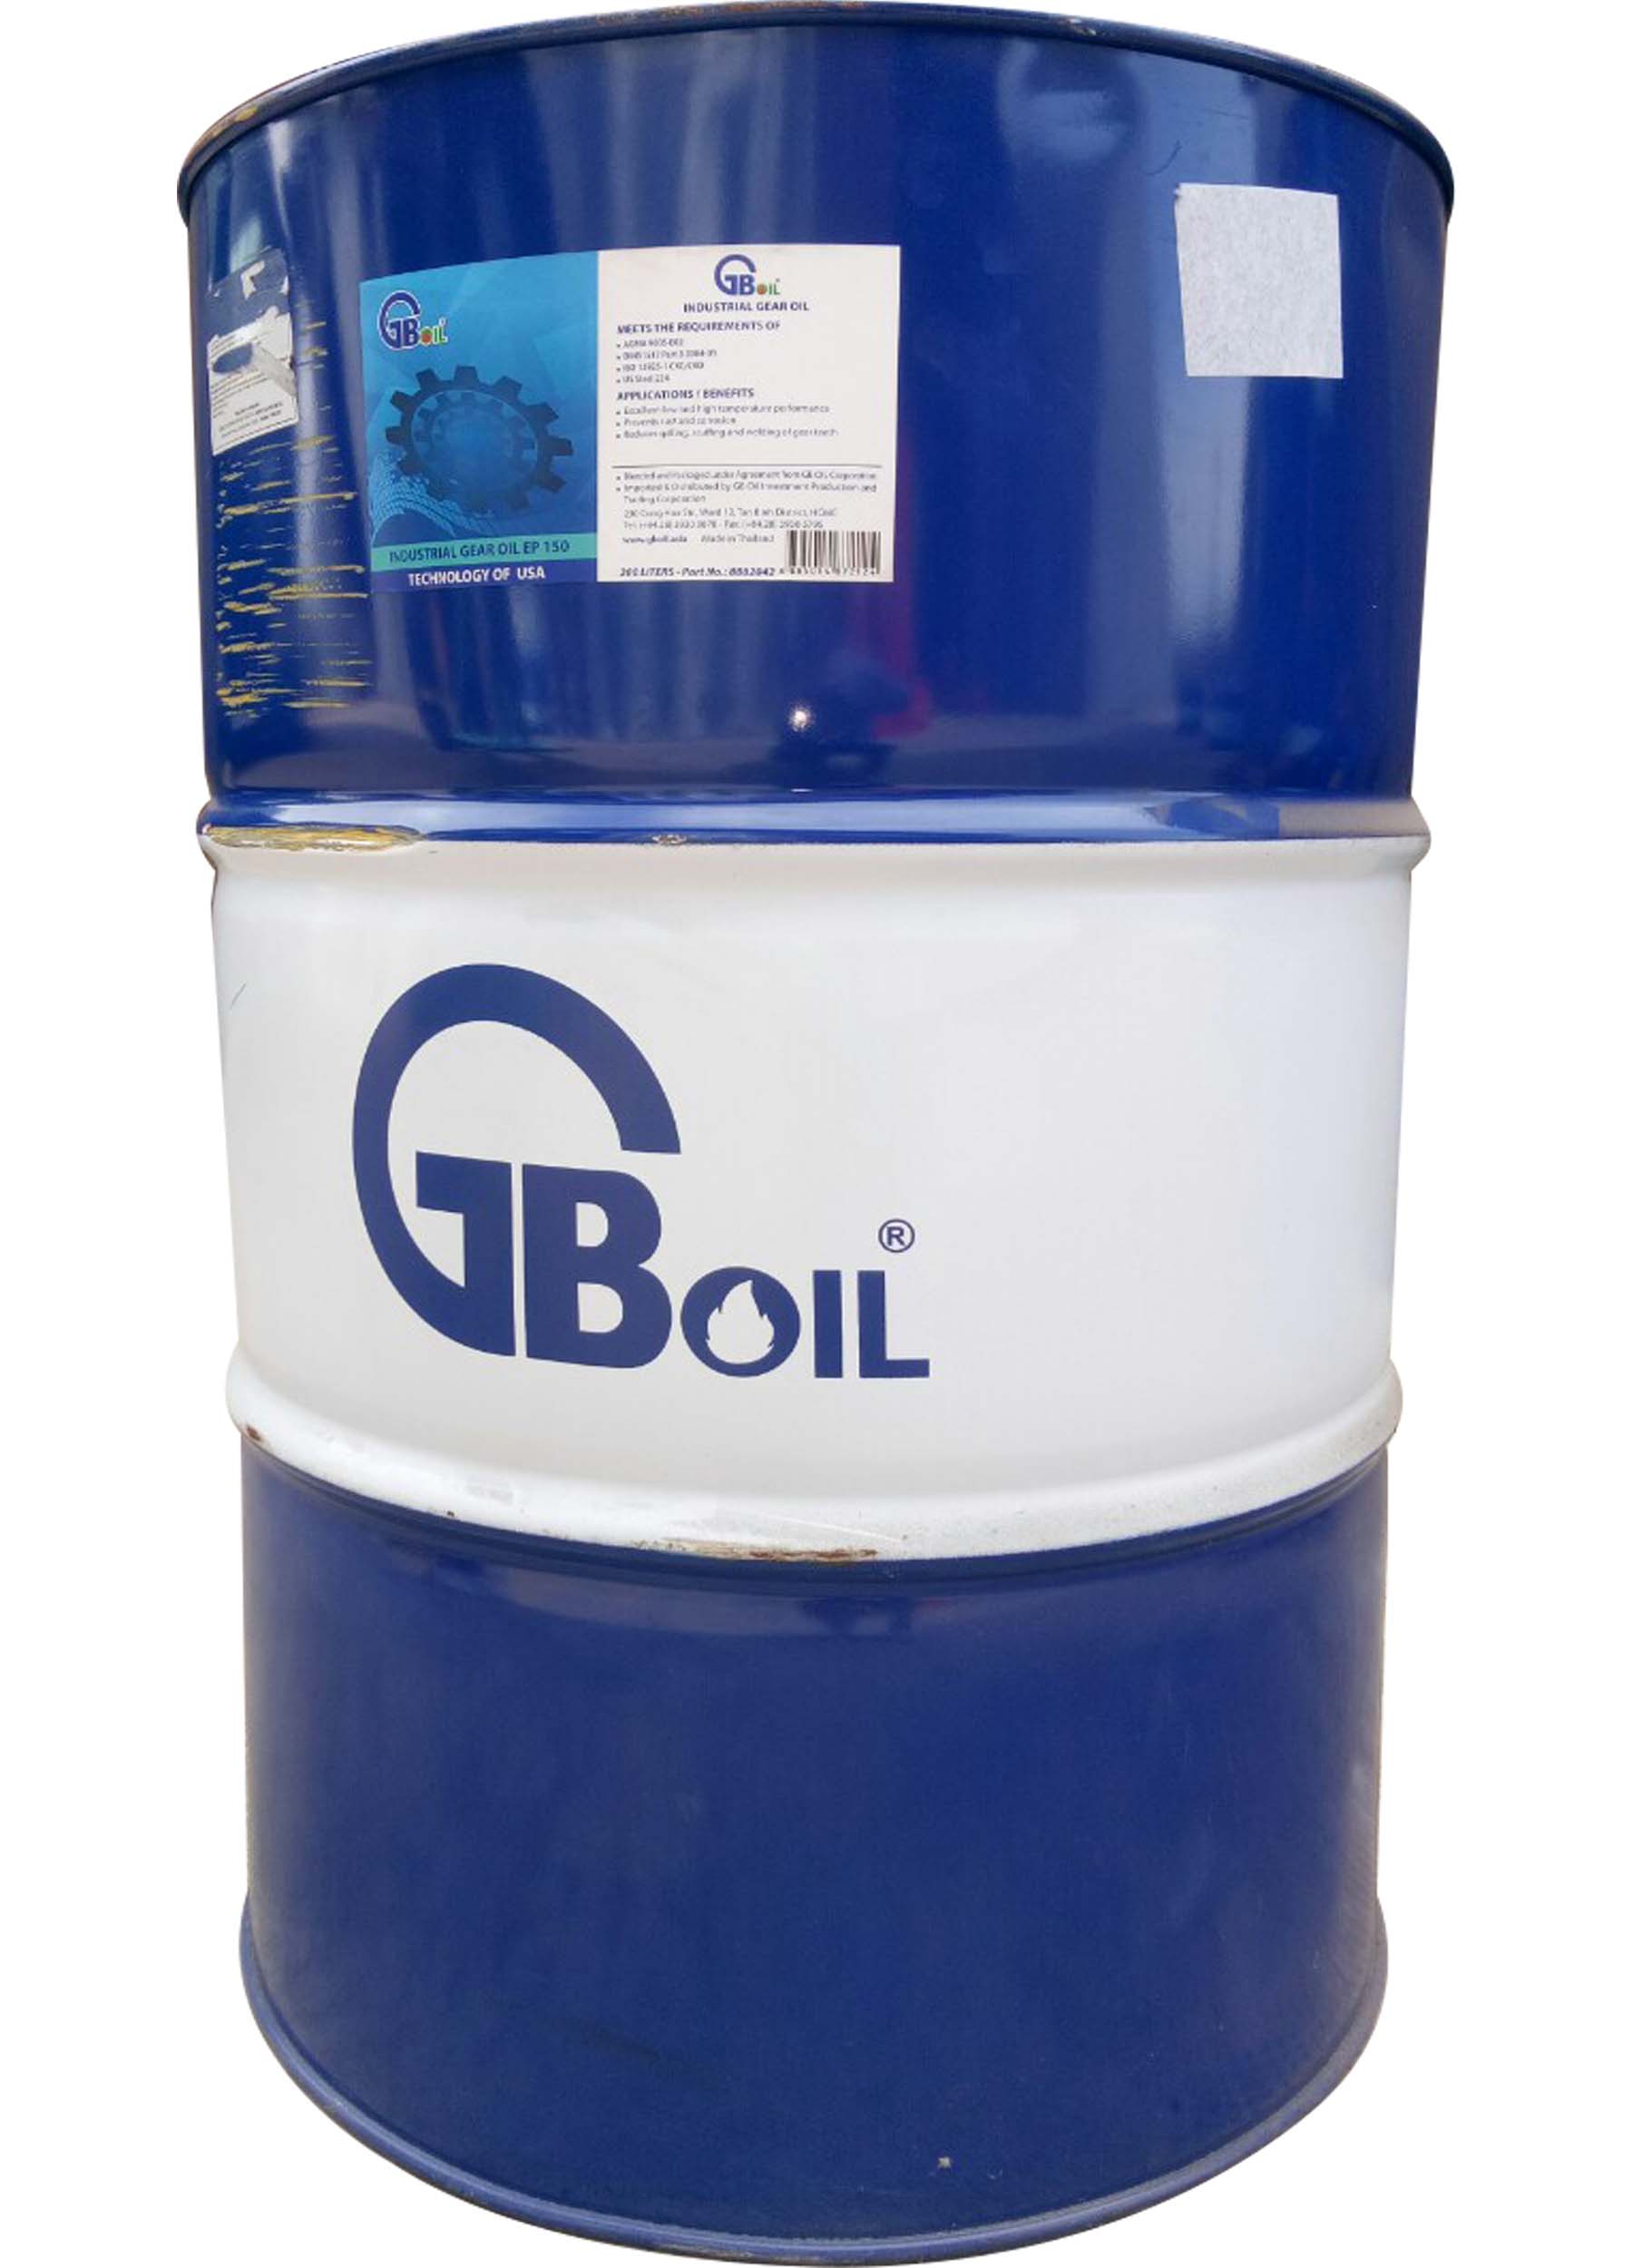 GB Industrial Gear Oil ISO 150